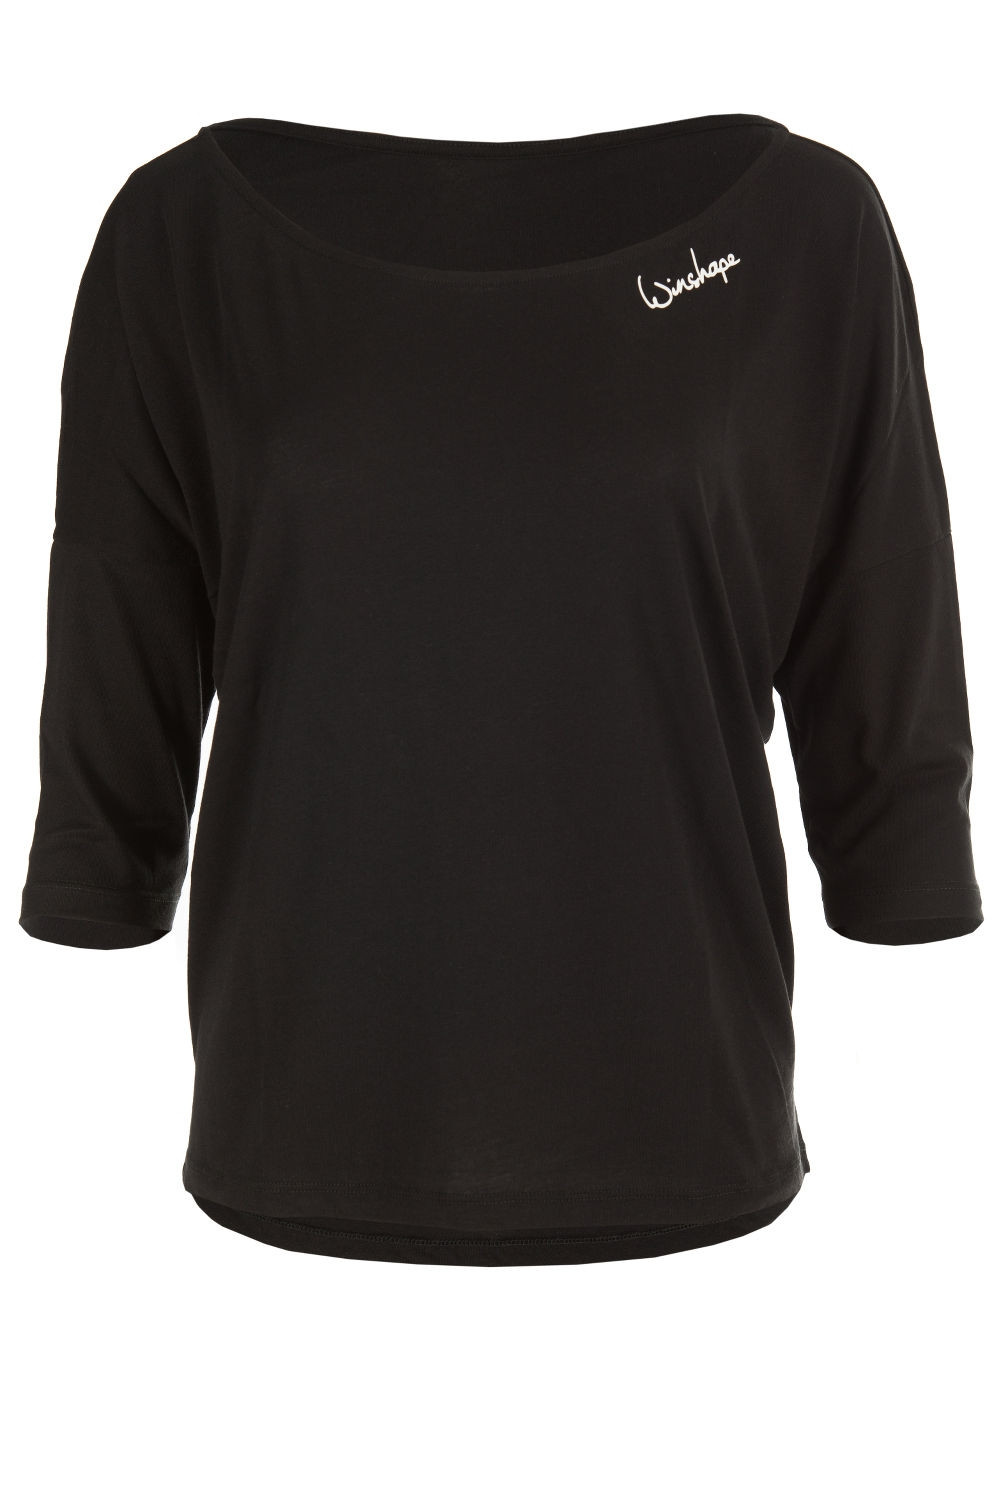 Style schwarz, Modal-3/4-Arm Ultra Winshape leichtes Shirt Dance MCS001,